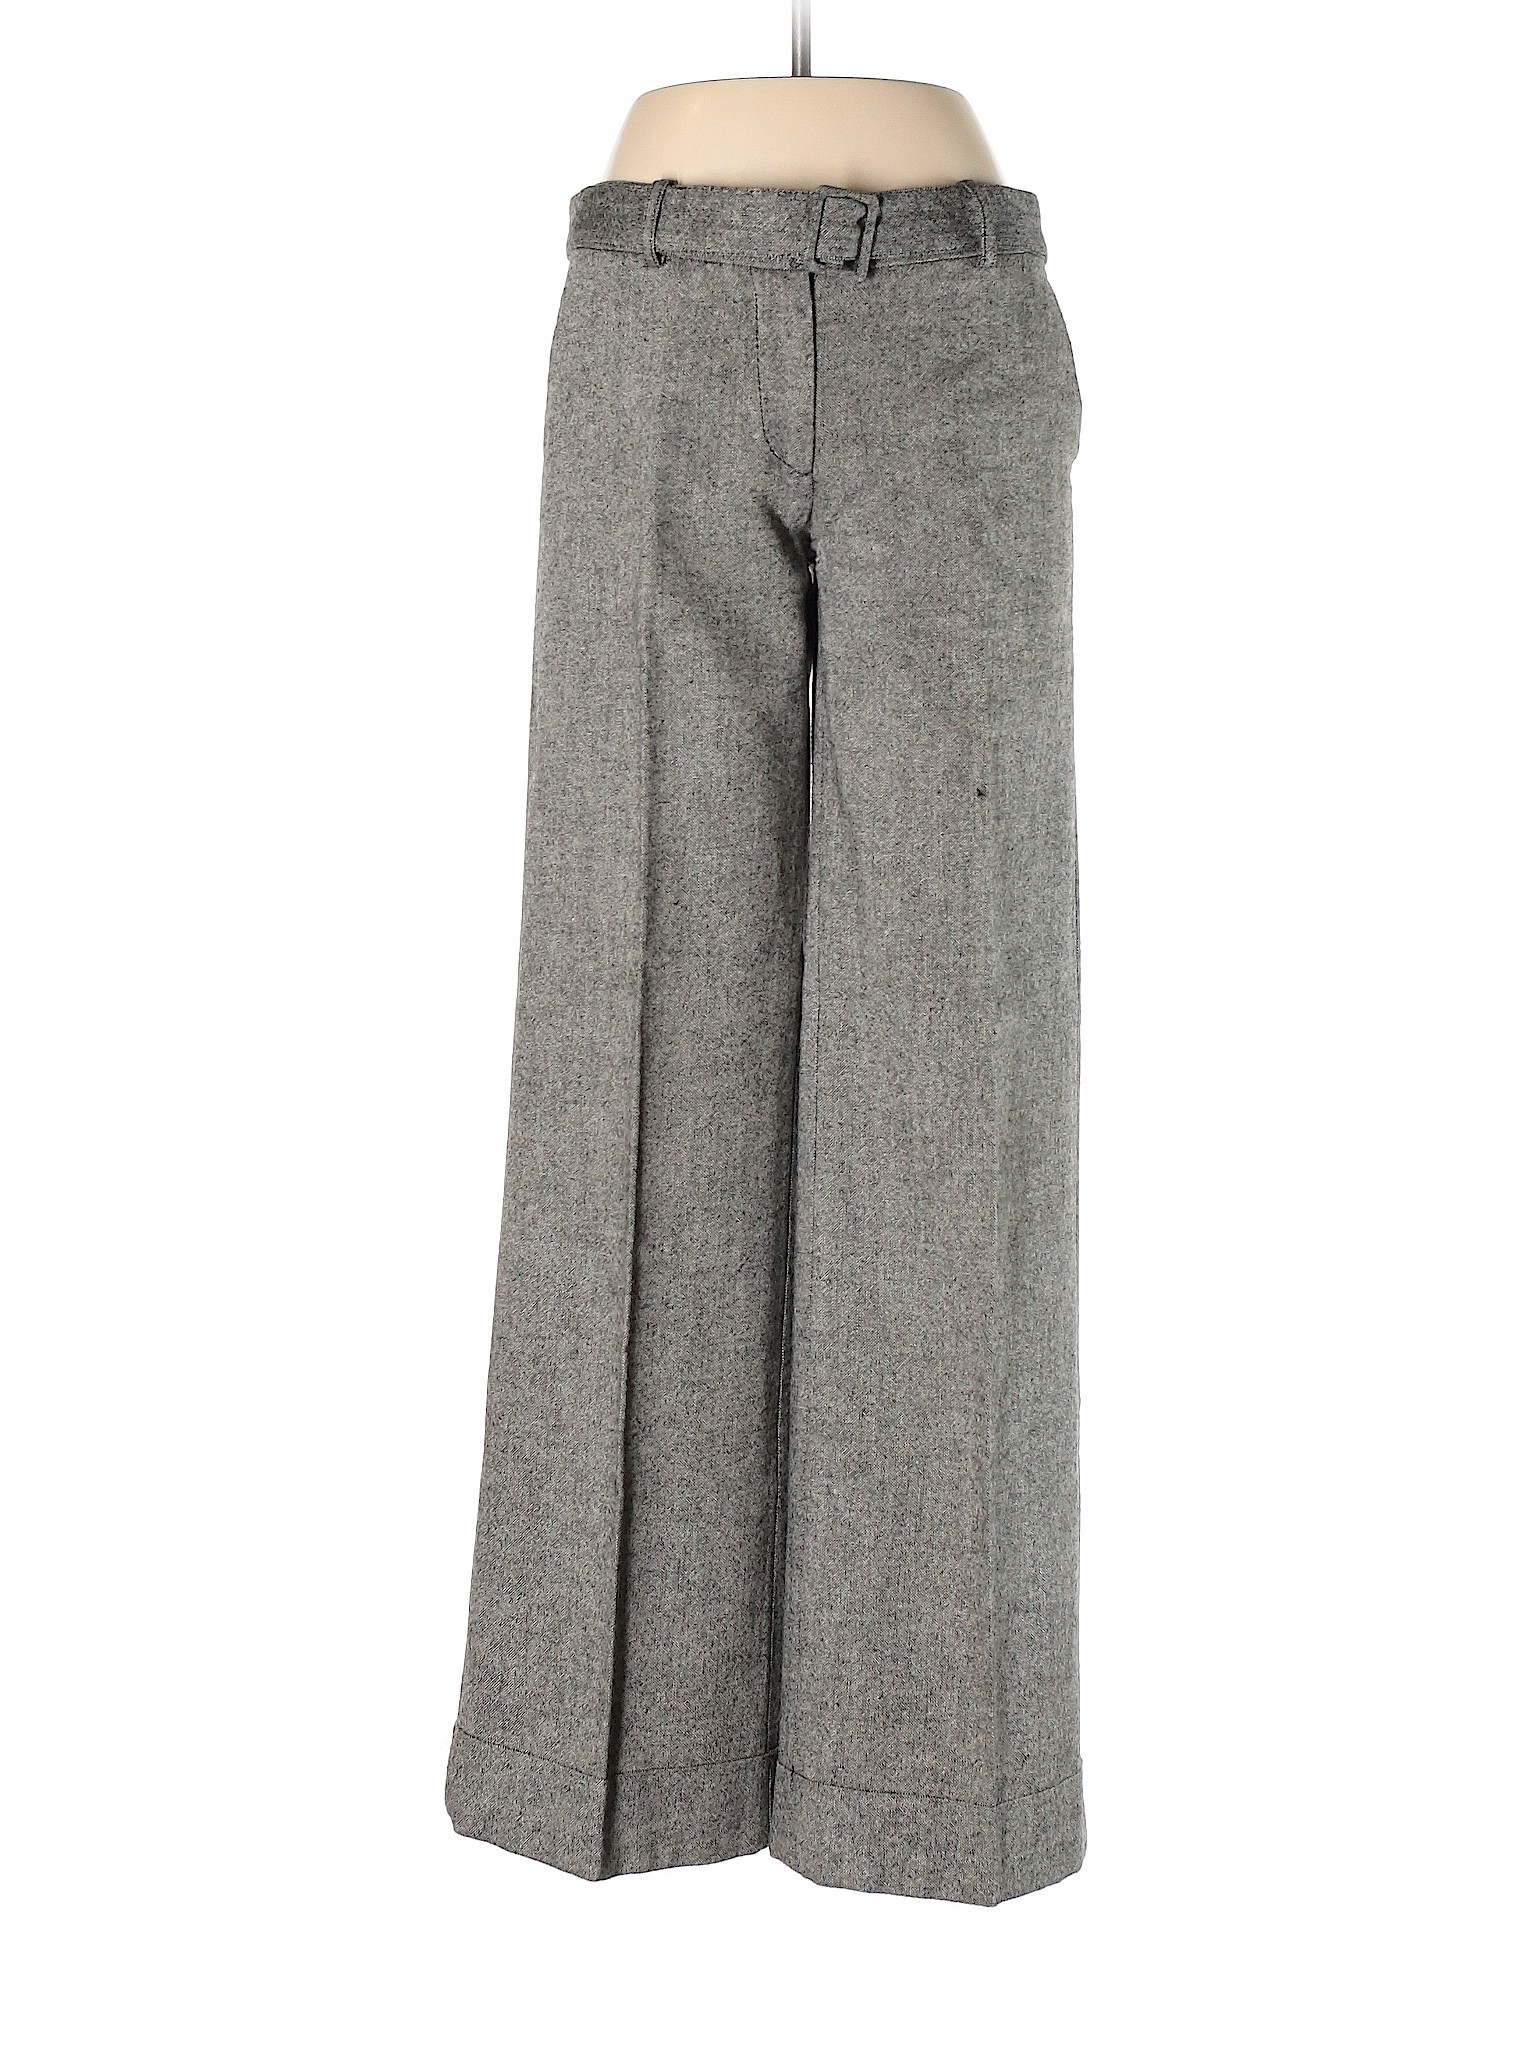 H&M Women Gray Dress Pants 6 | eBay